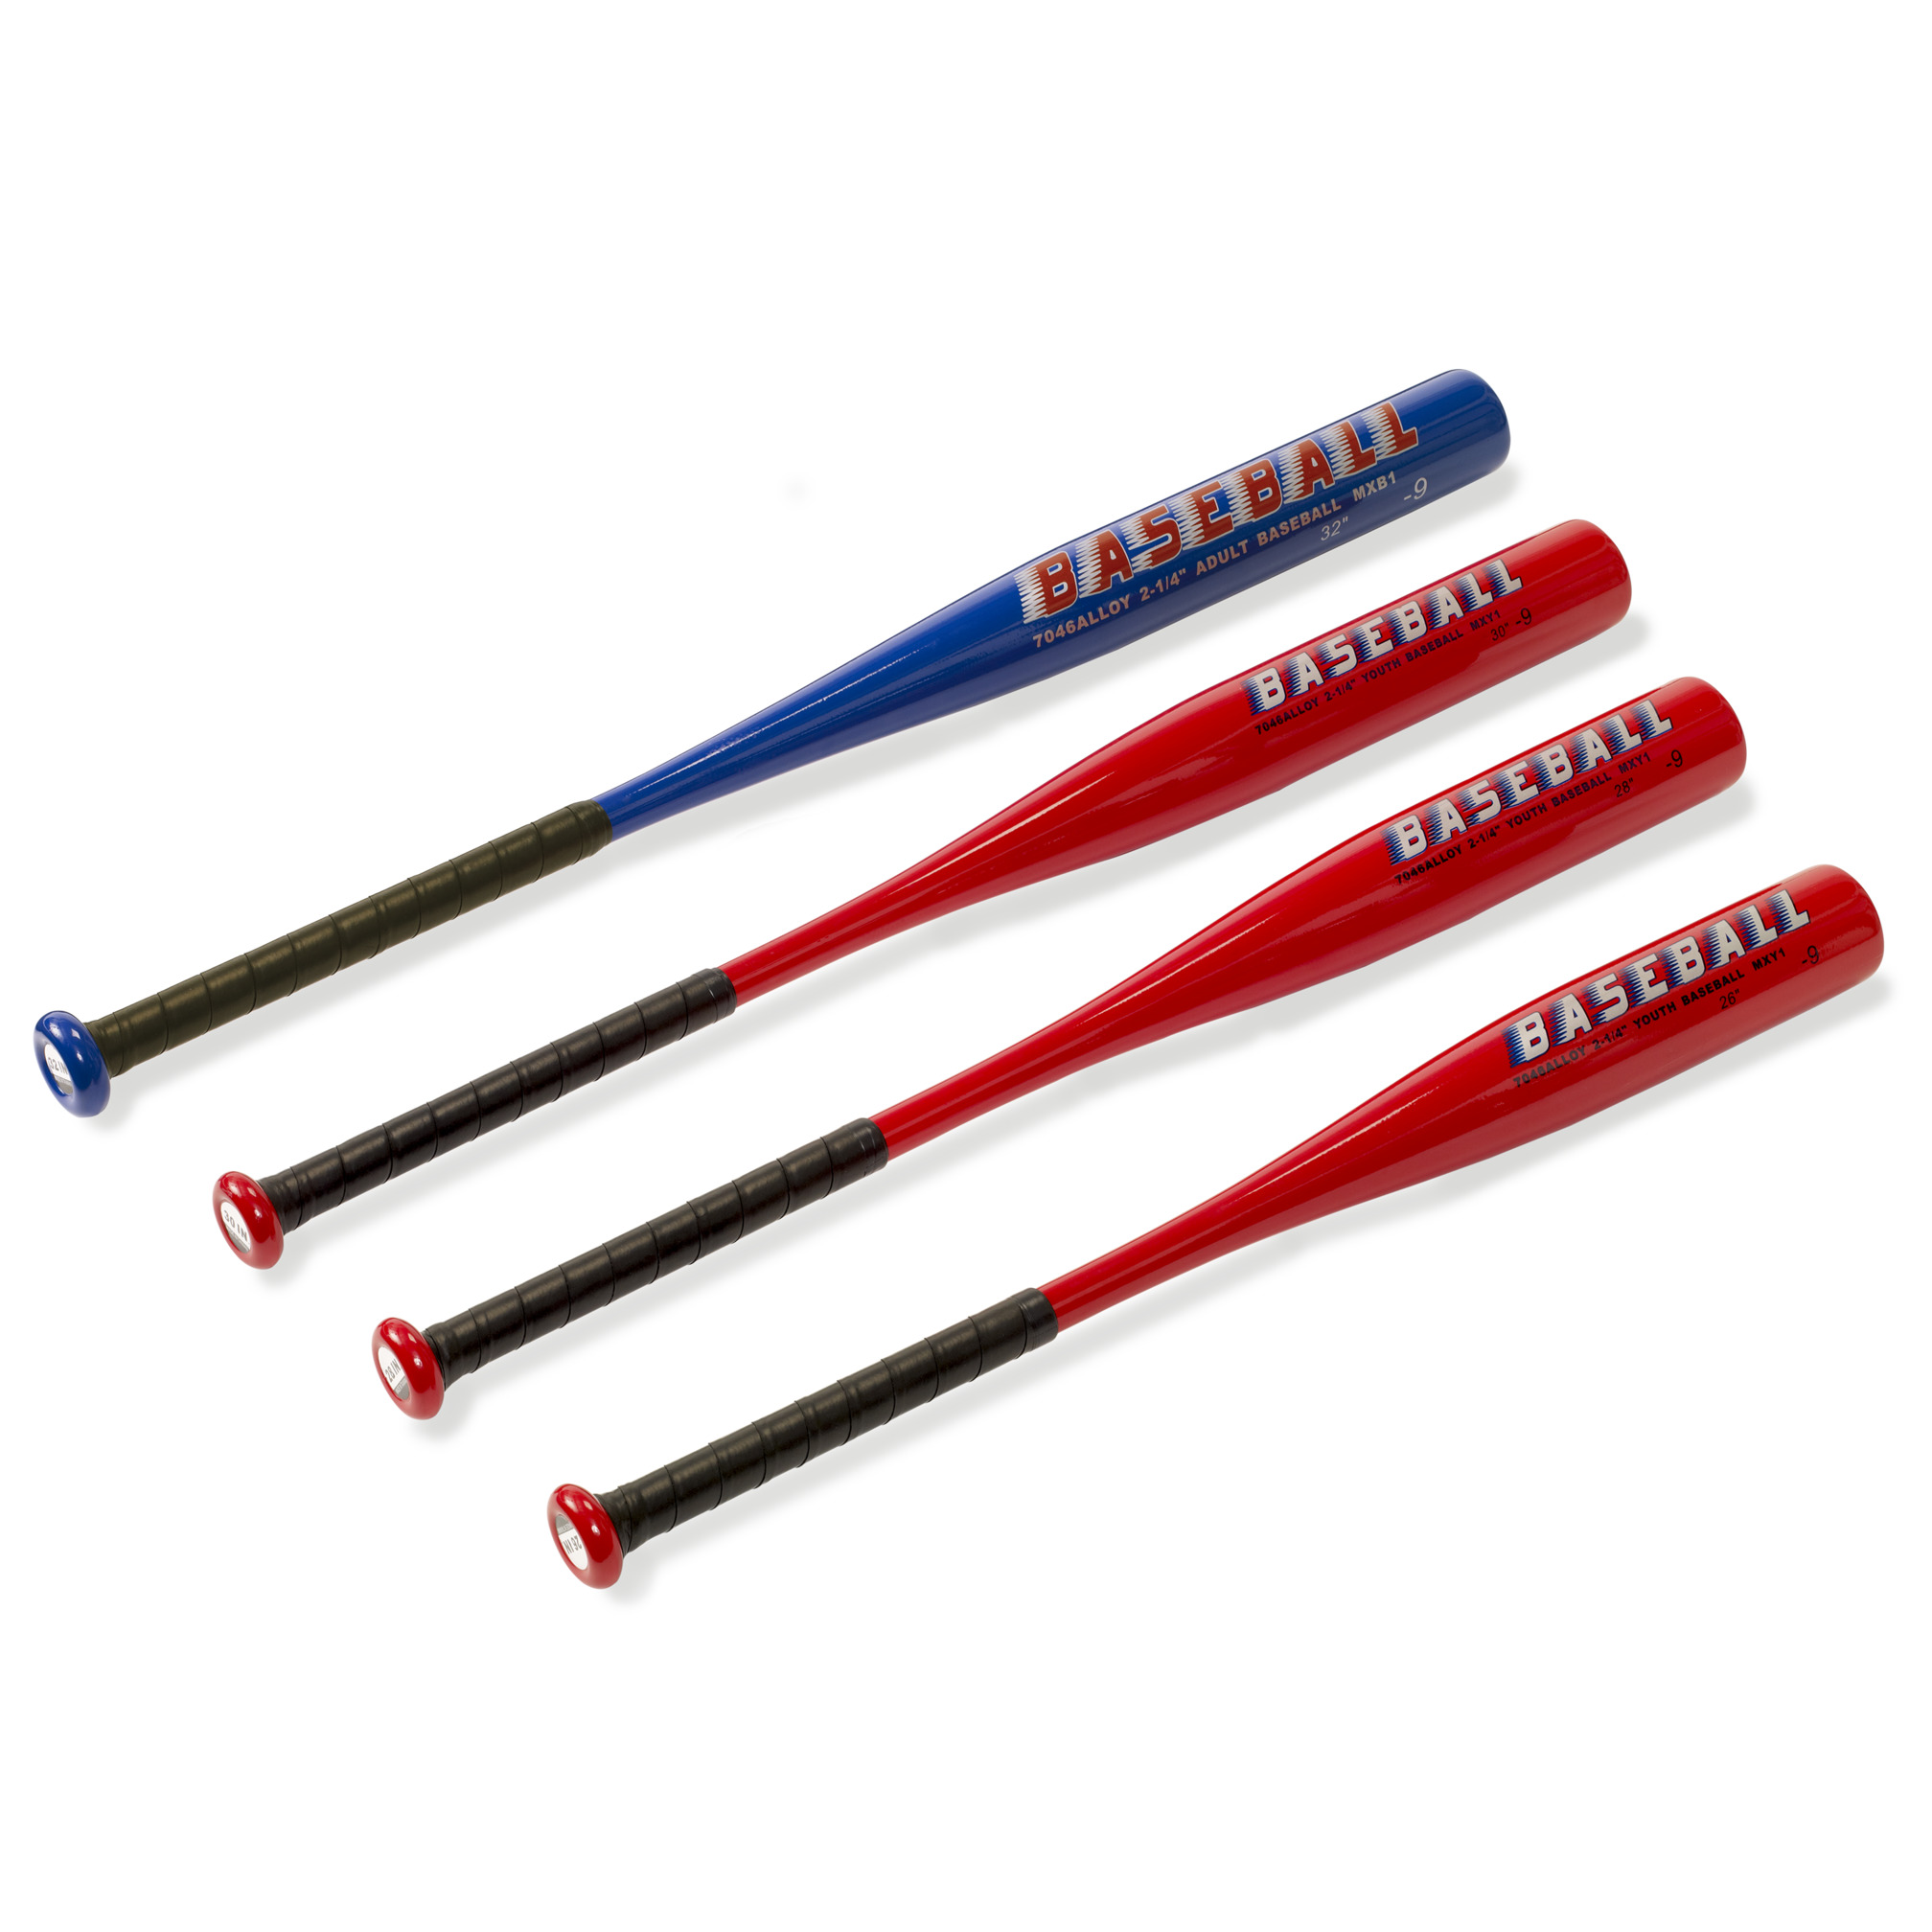 Baseball and softball bat aluminium, 30 inch